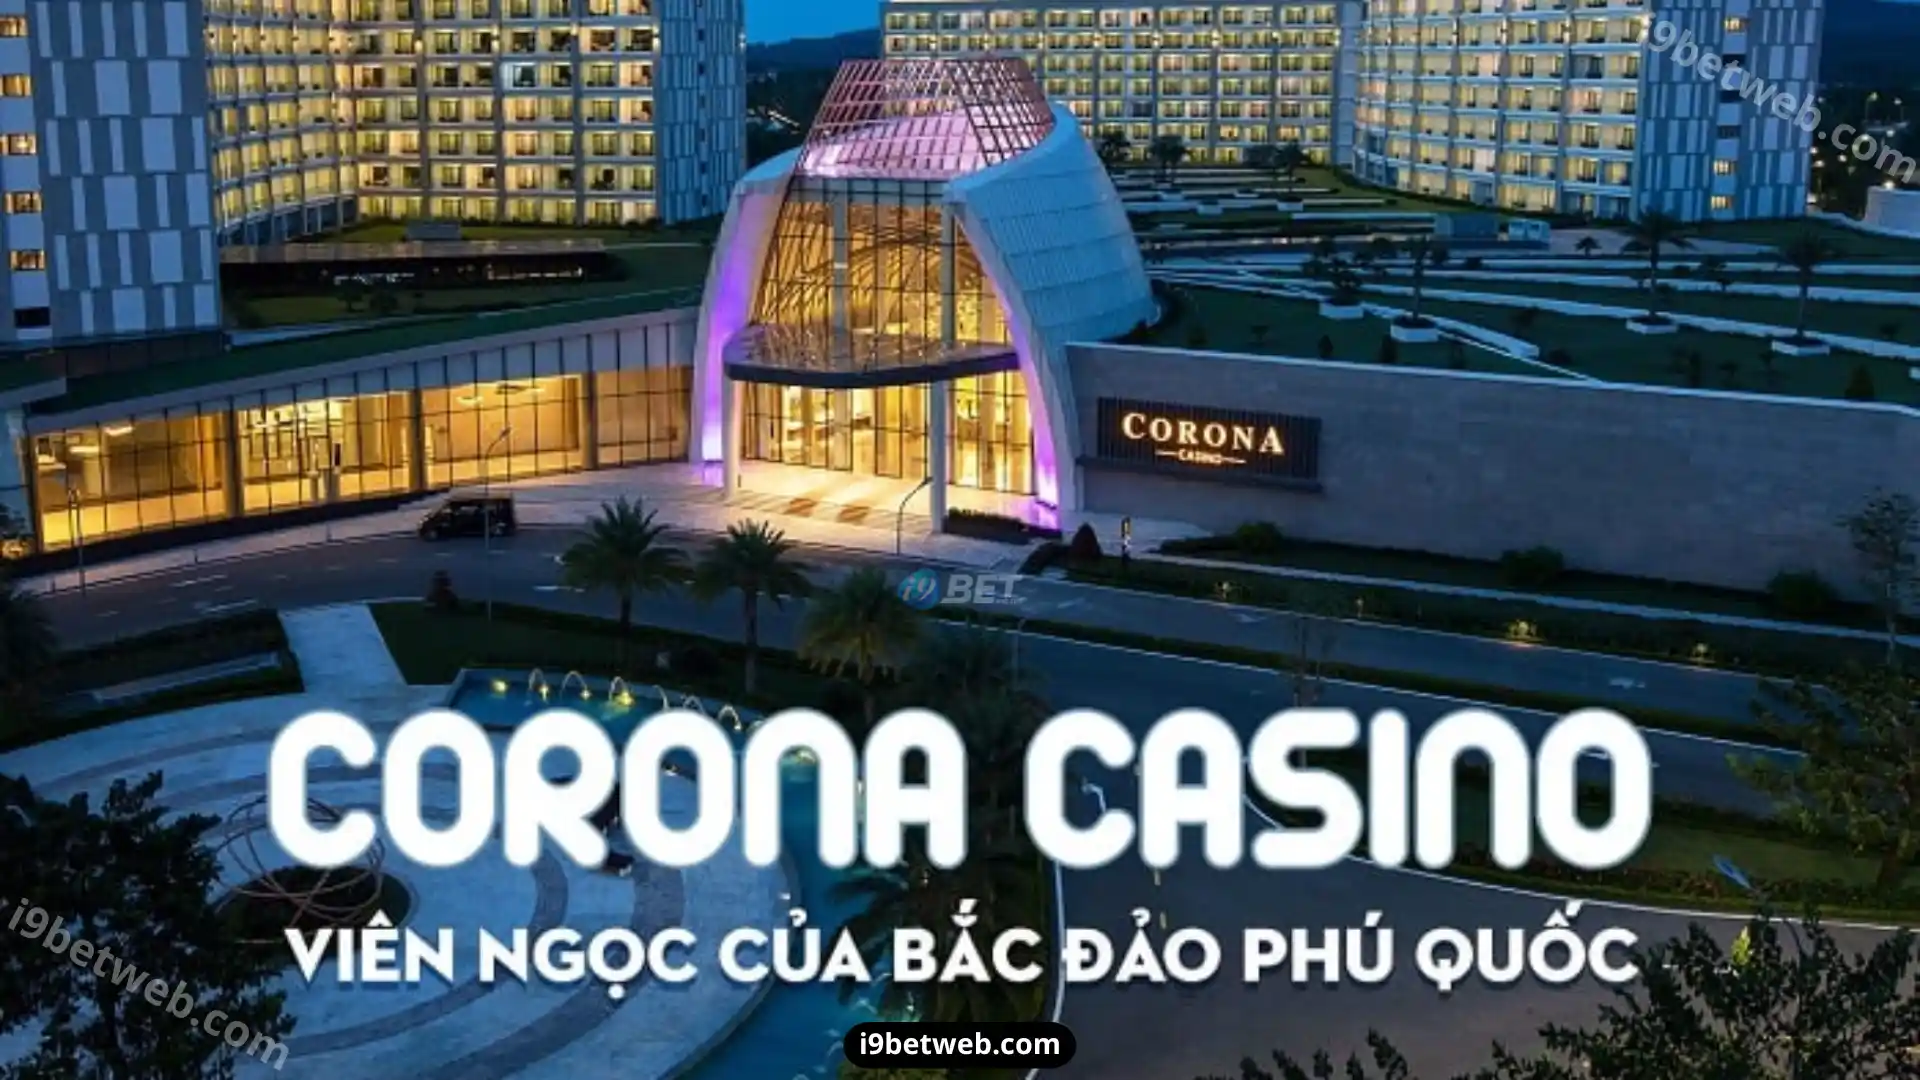 Casino Corona Phú Quốc được bình chọn là một trong những Top Casino lớn nhất tại Việt Nam